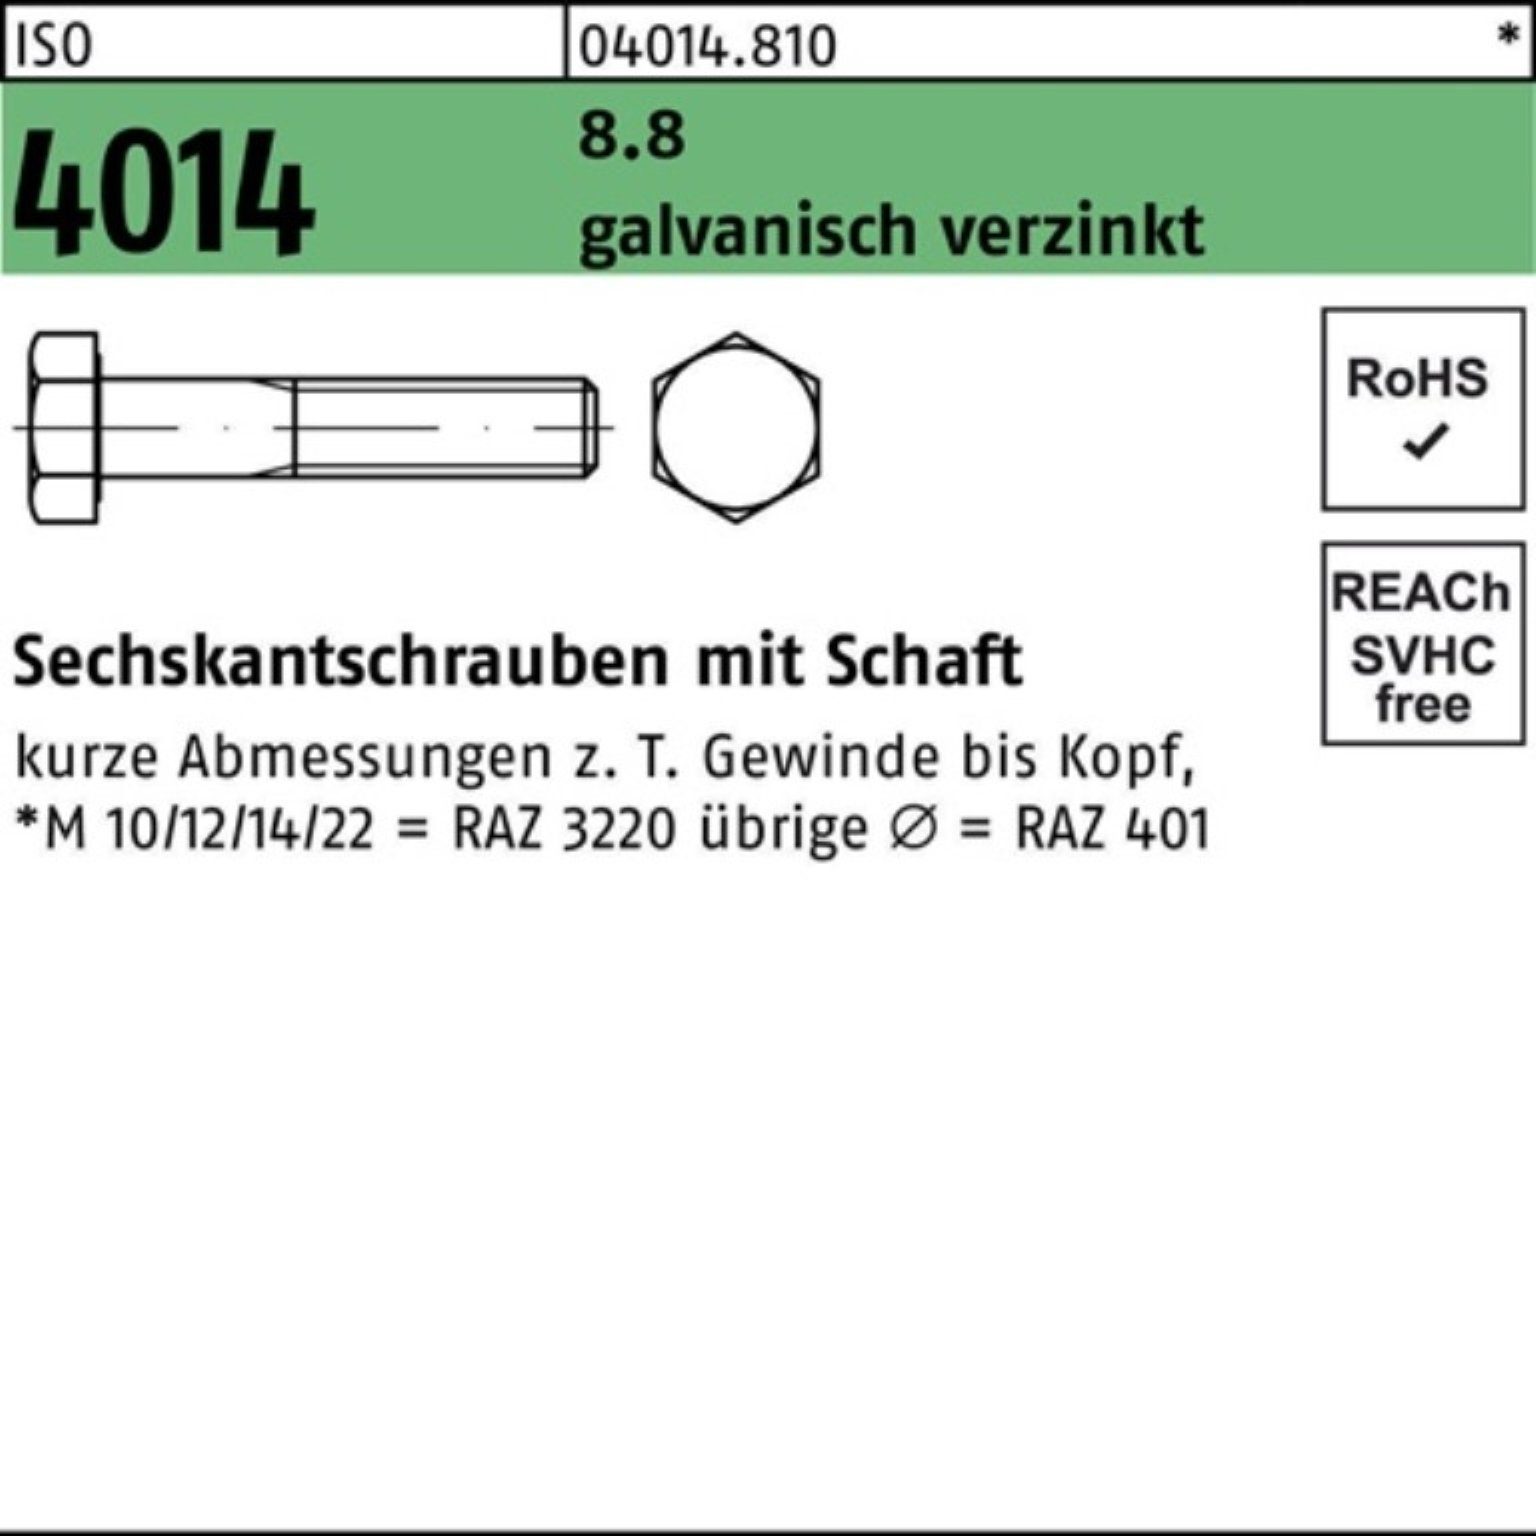 Bufab Sechskantschraube Sechskantschraube 8.8 galv.verz. ISO Schaft 4014 210 1 Pack M20x 100er